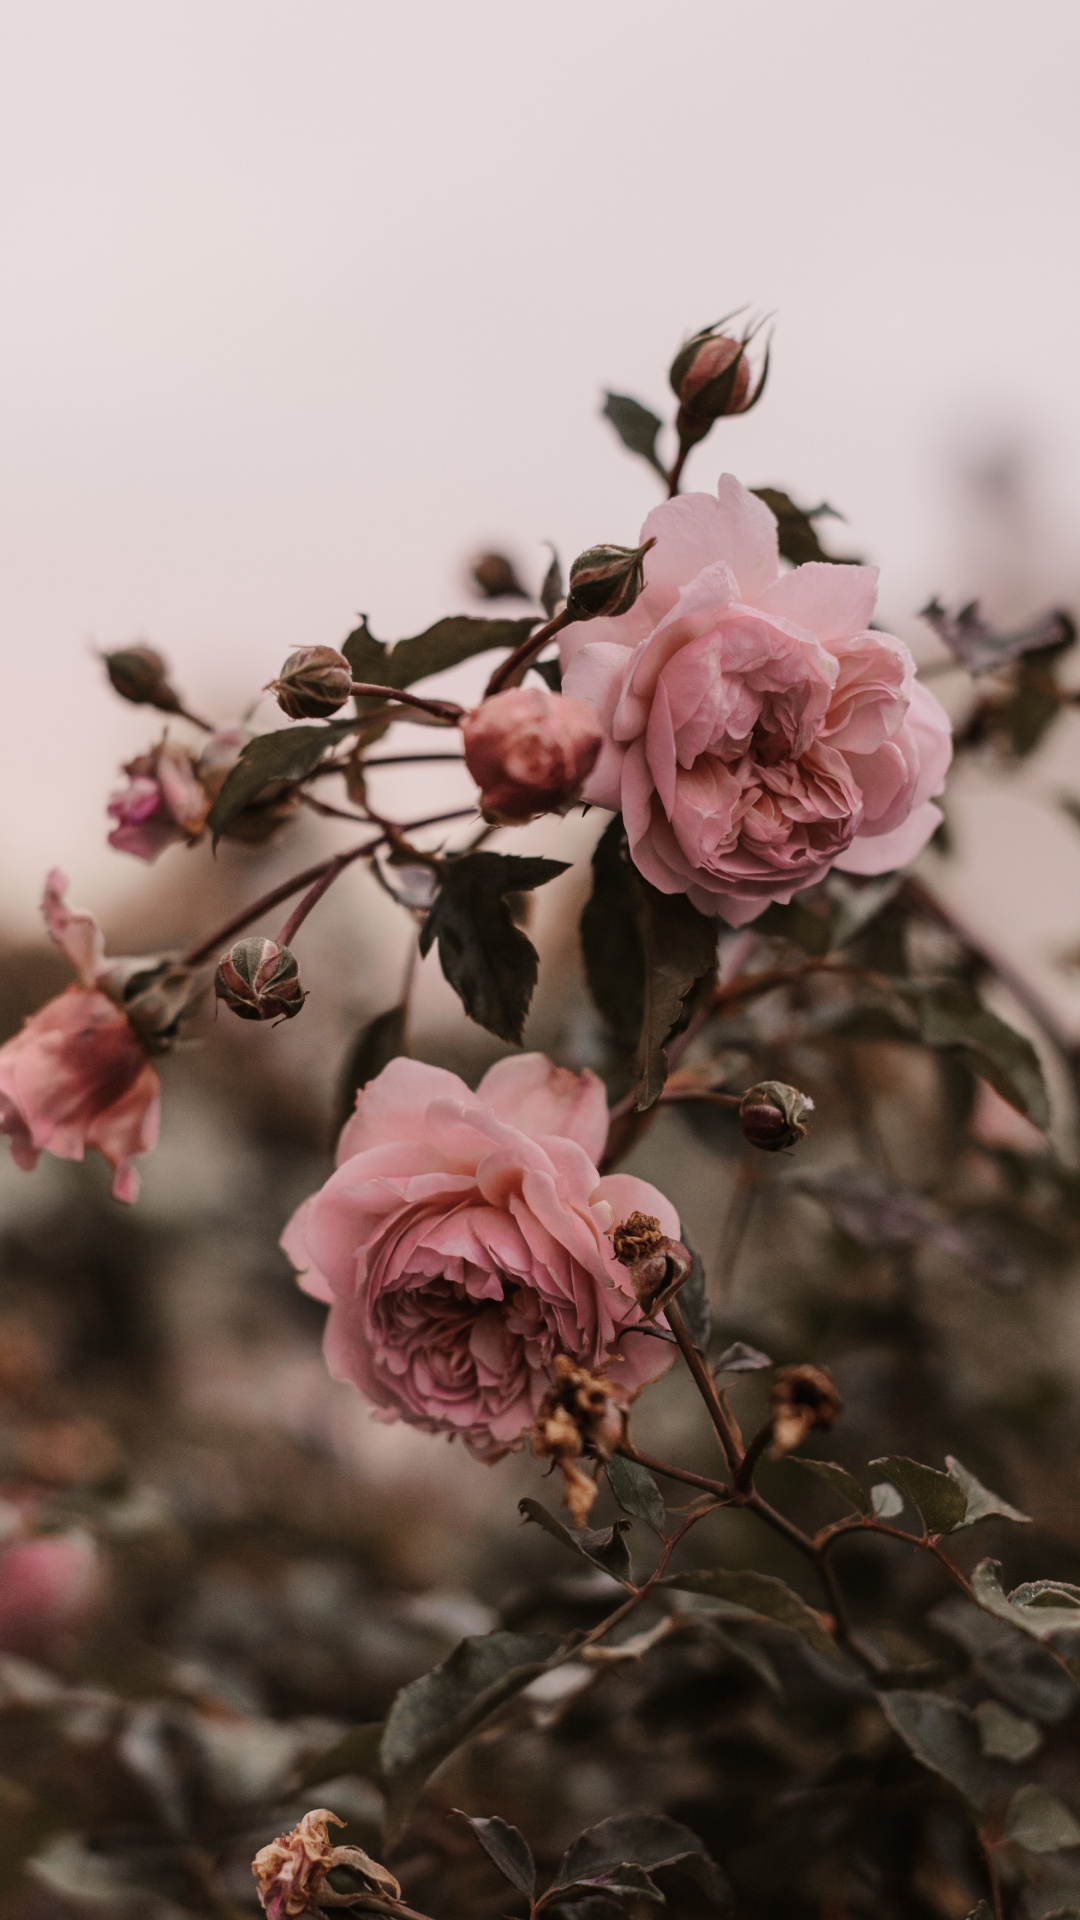 粉红色, 弹簧, 玫瑰花园, 显花植物, 玫瑰家庭 壁纸 1080x1920 允许